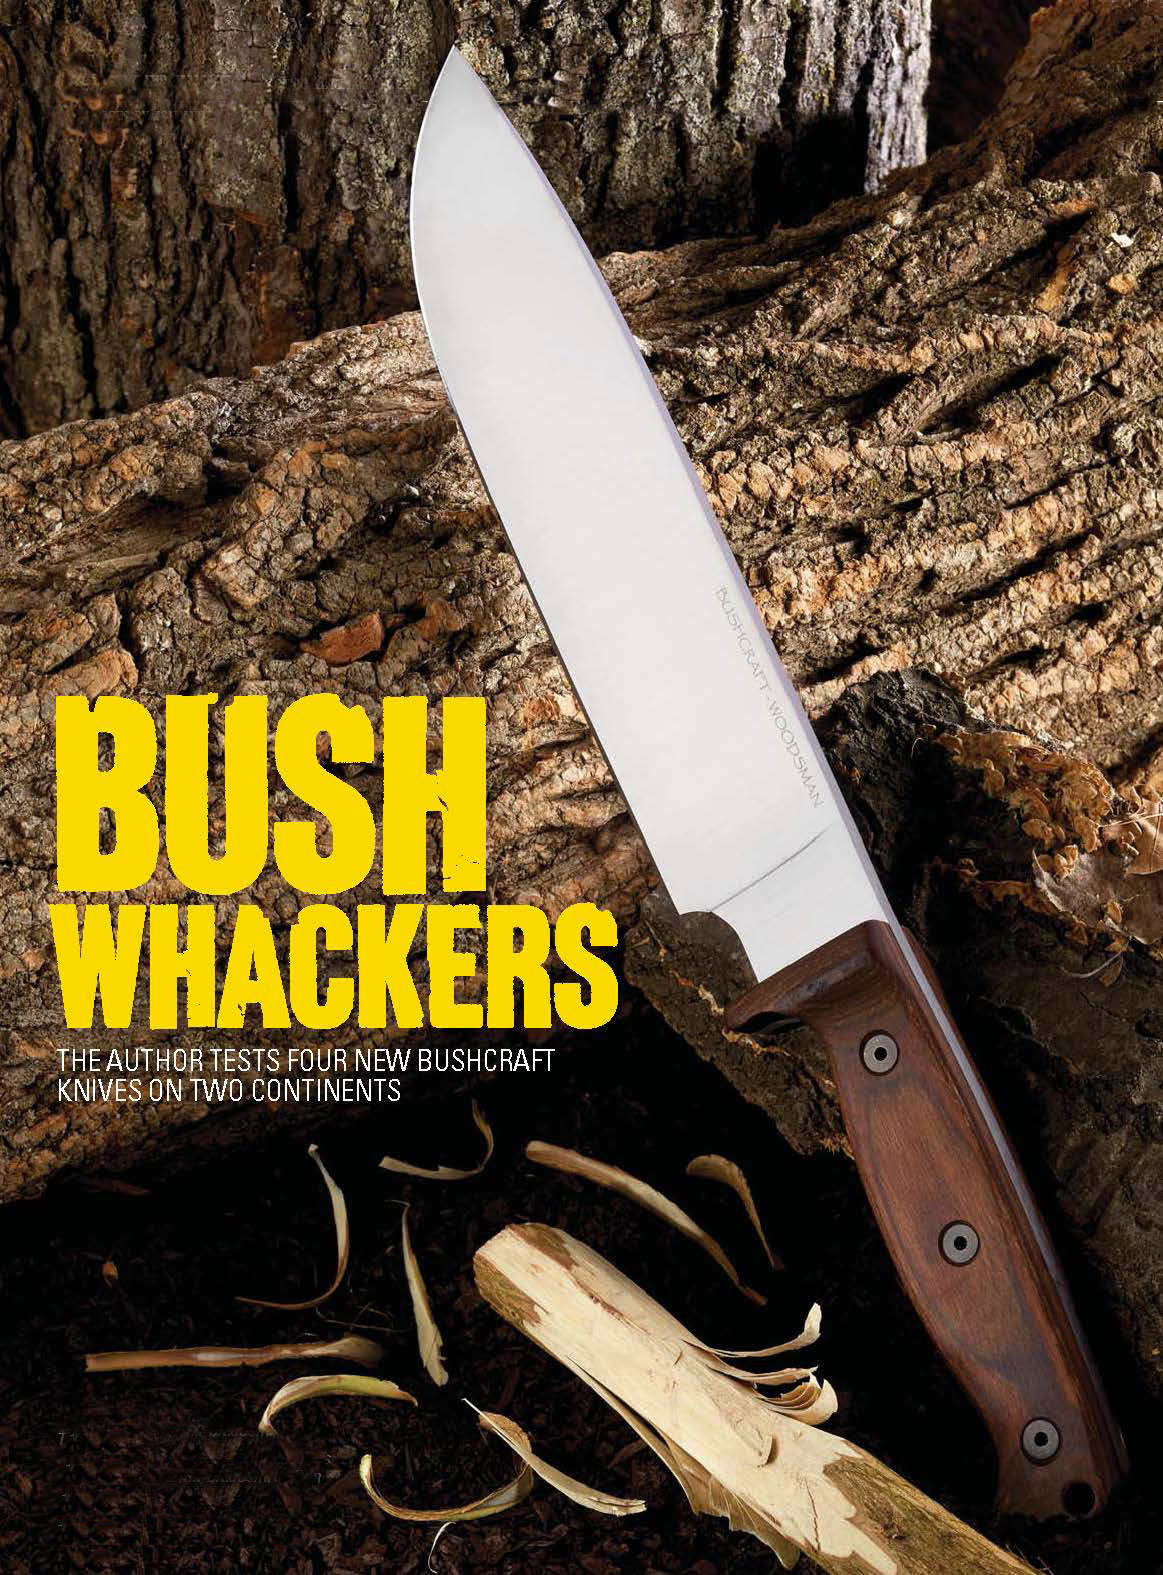 New bushcraft knives